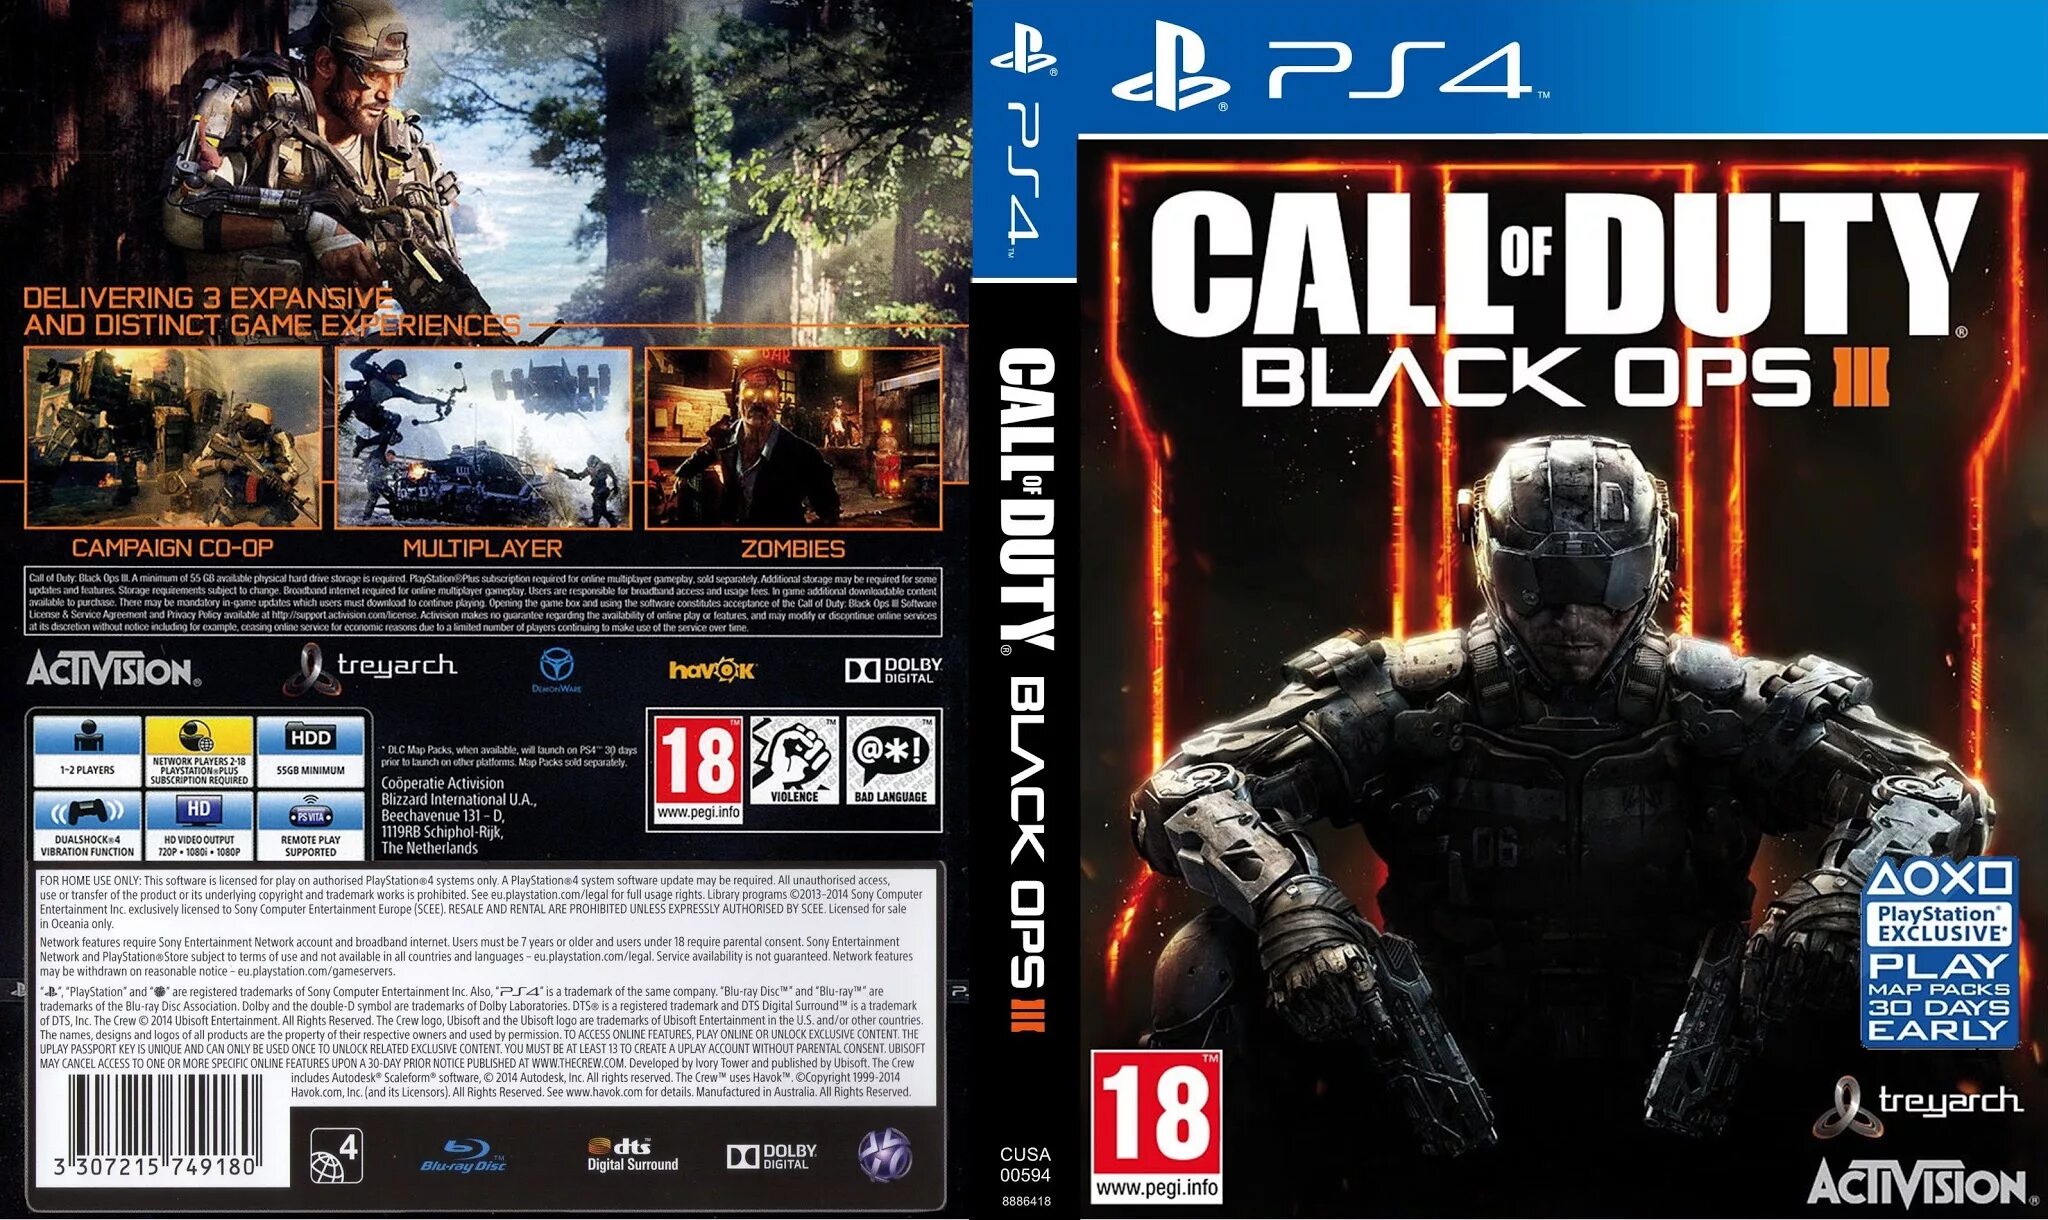 Пс3 калов дьюти. Call of Duty ps4 диск. Call of Duty 3 ps3 диск. Cod Black ops 3 диск ps4. Black ops 3 ps4.